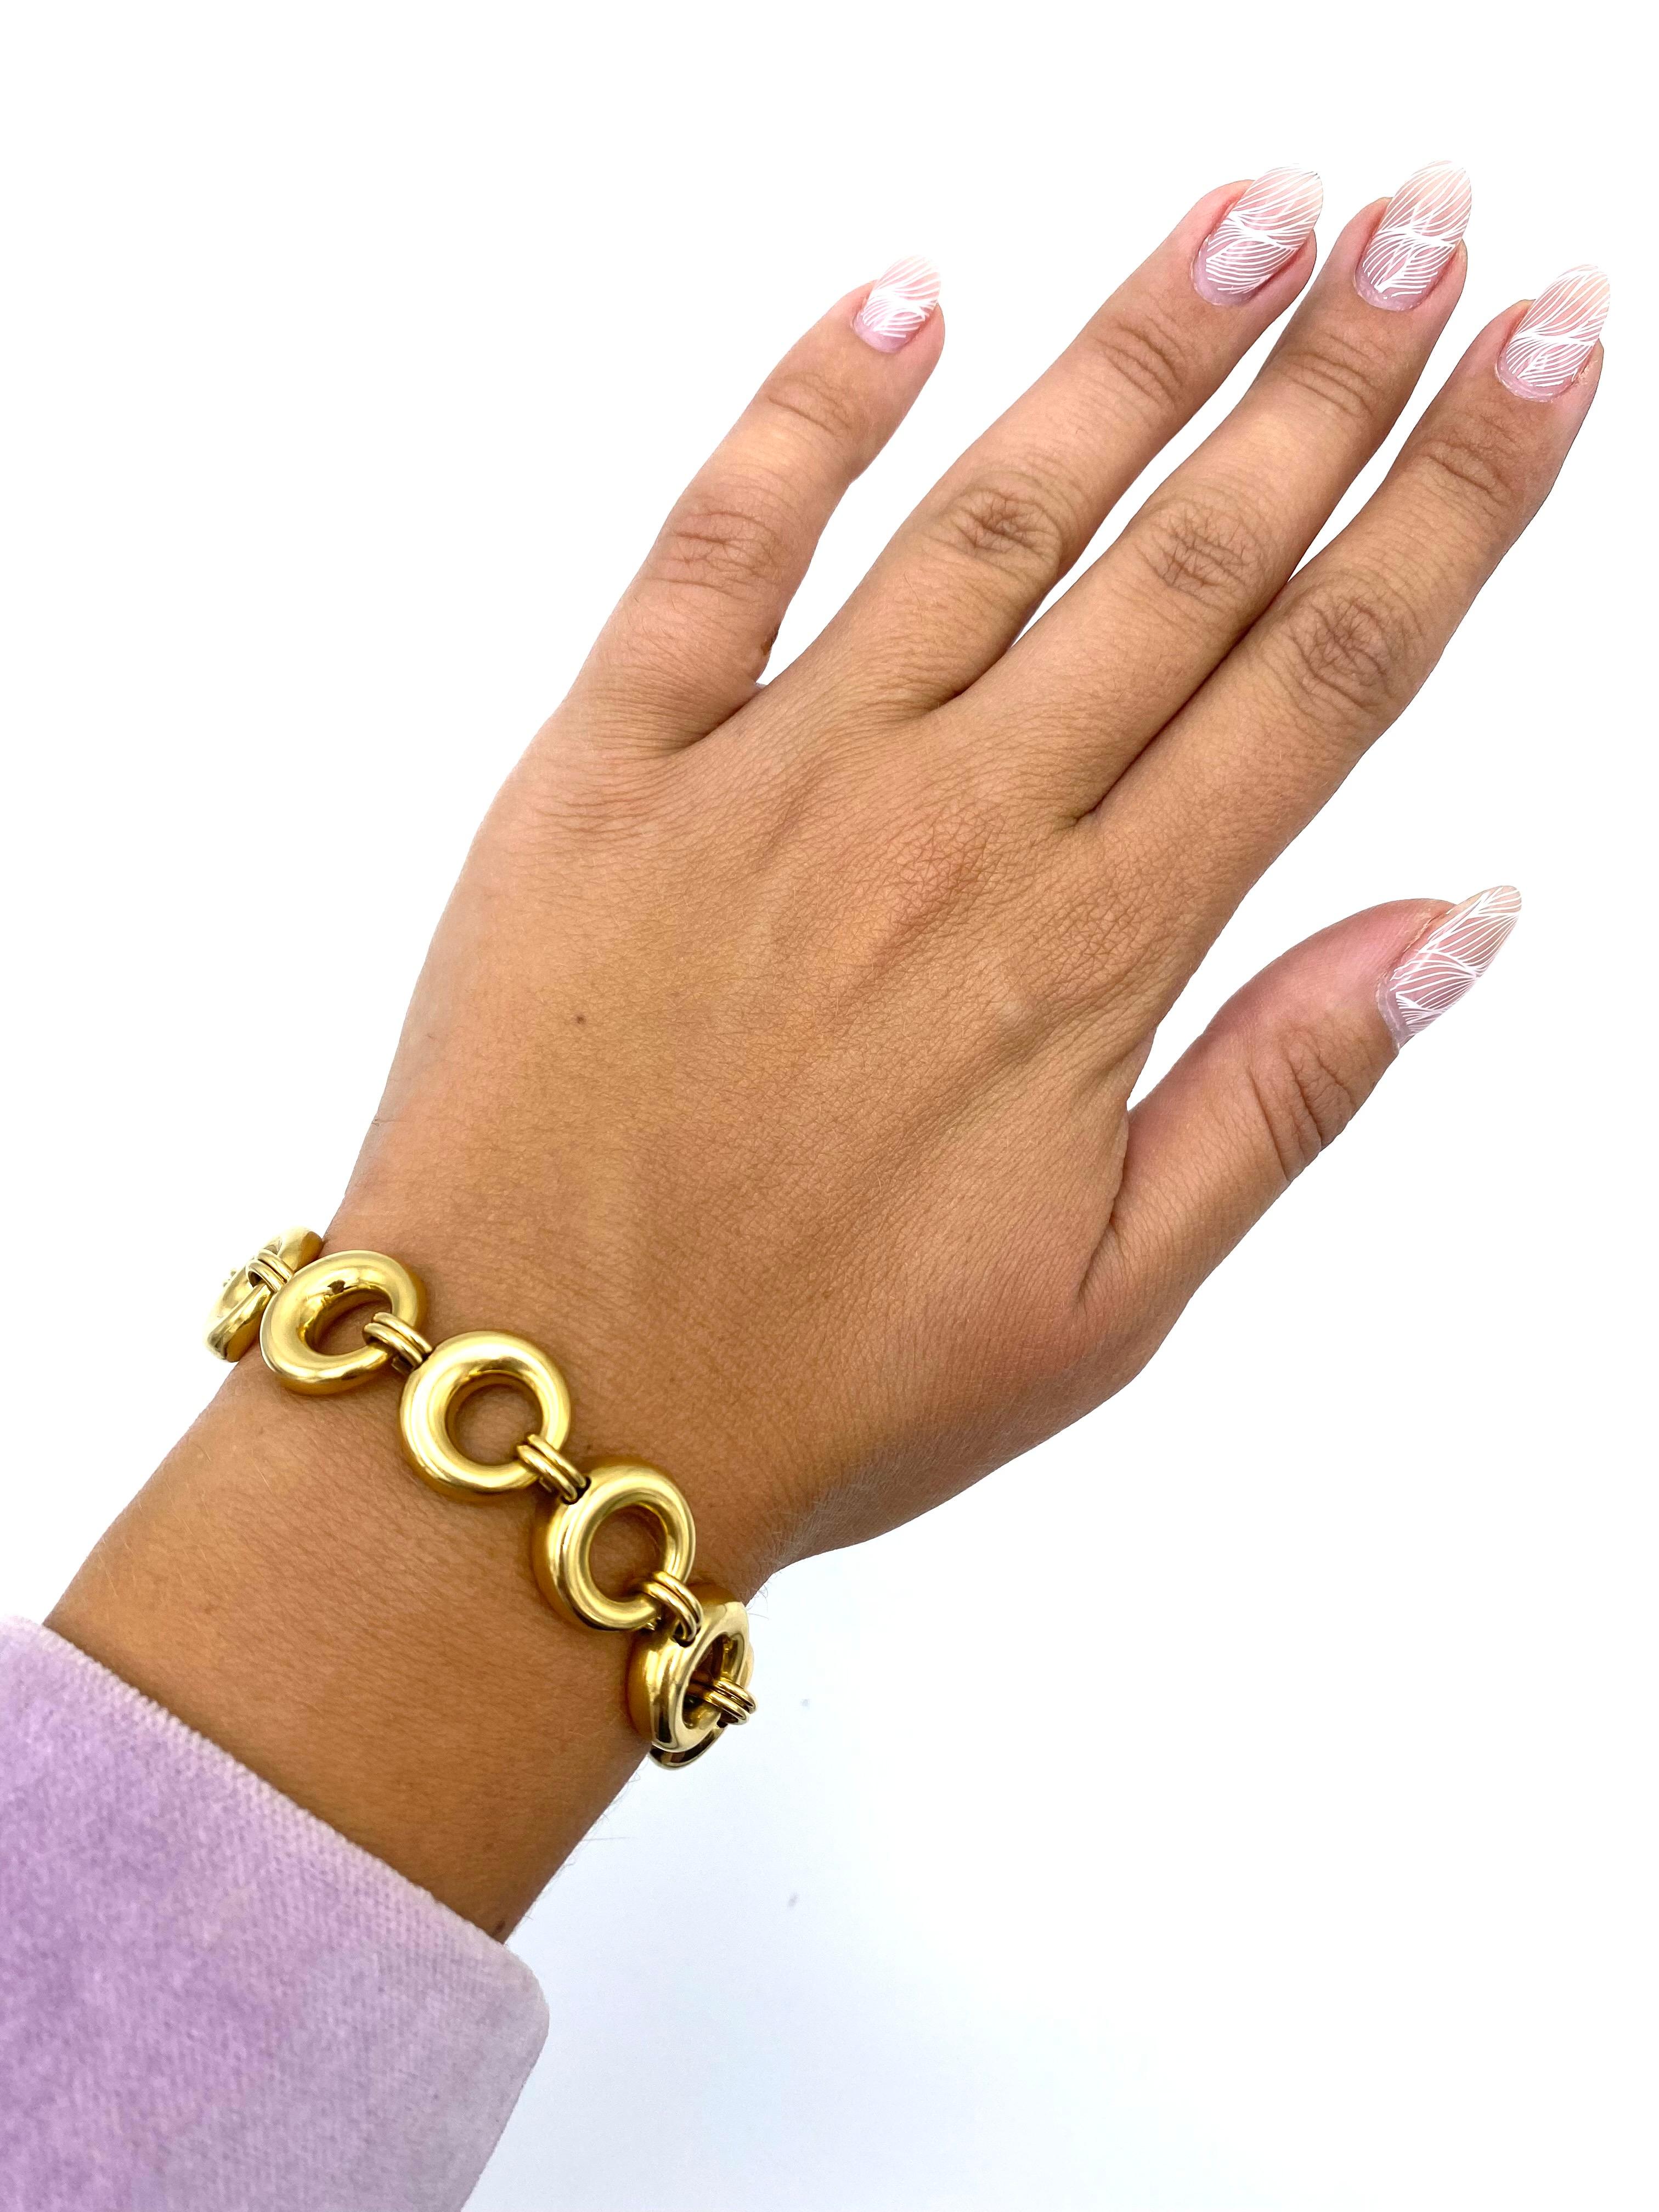 Vintage Chaumet Paris Yellow Gold Link Bracelet and Necklace Set For Sale 2